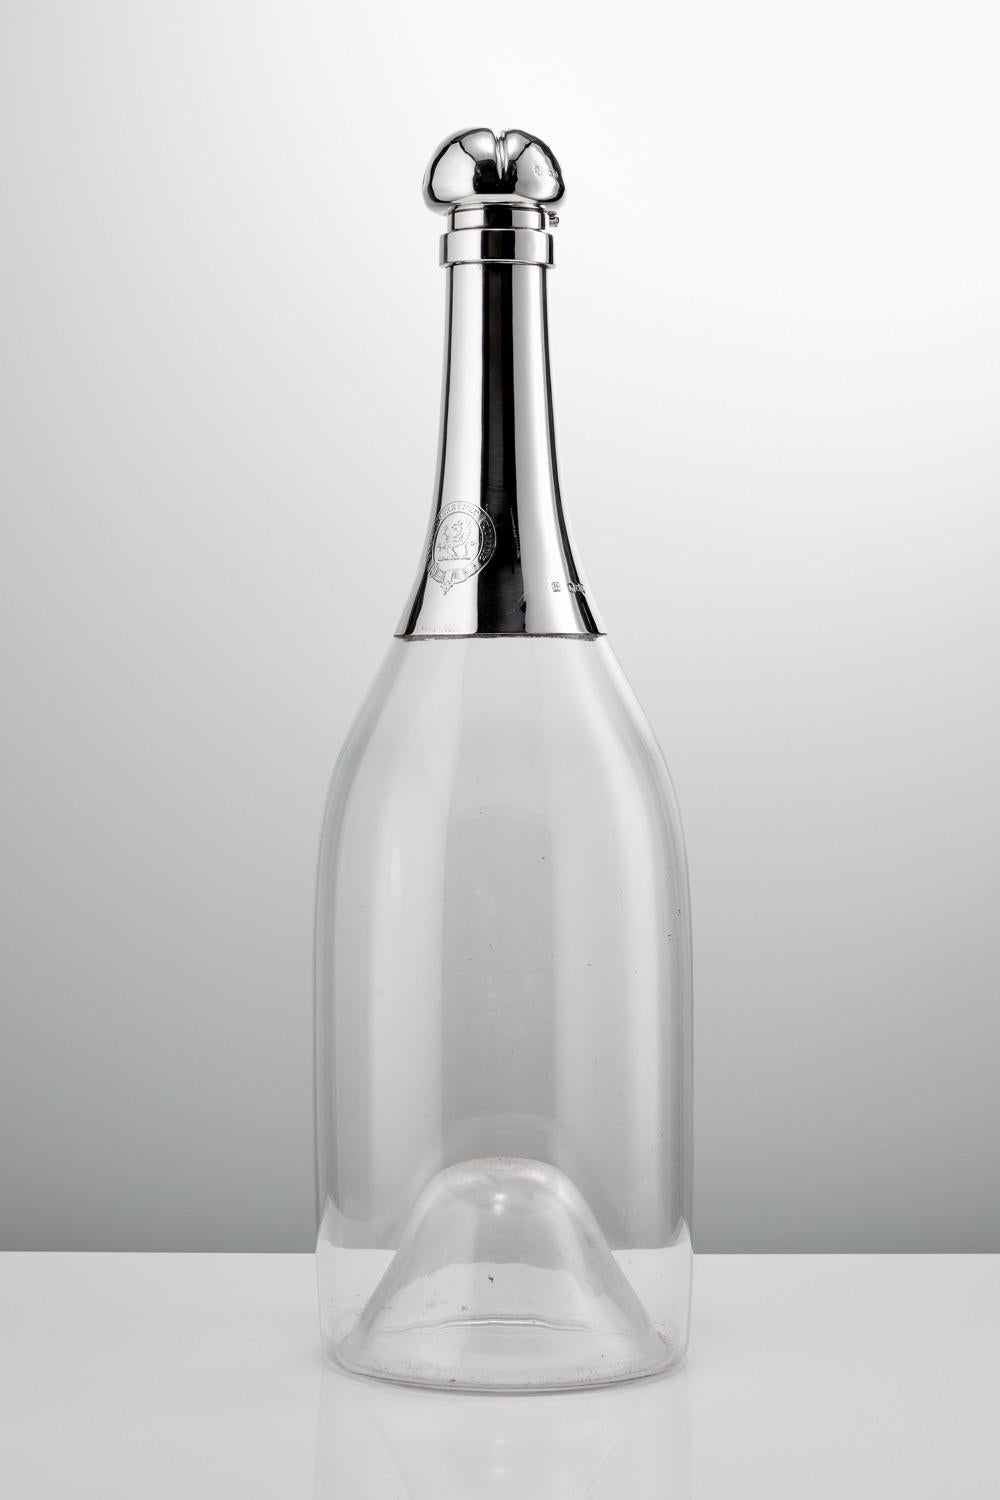 Magnifique bouteille de champagne en verre et en argent du 19e siècle, 1892, fabriquée par T Heath & J H Middleton. Une carafe à champagne monumentale et rare, de la taille de Jéroboam, en verre soufflé et montée sur argent.

La carafe présente une